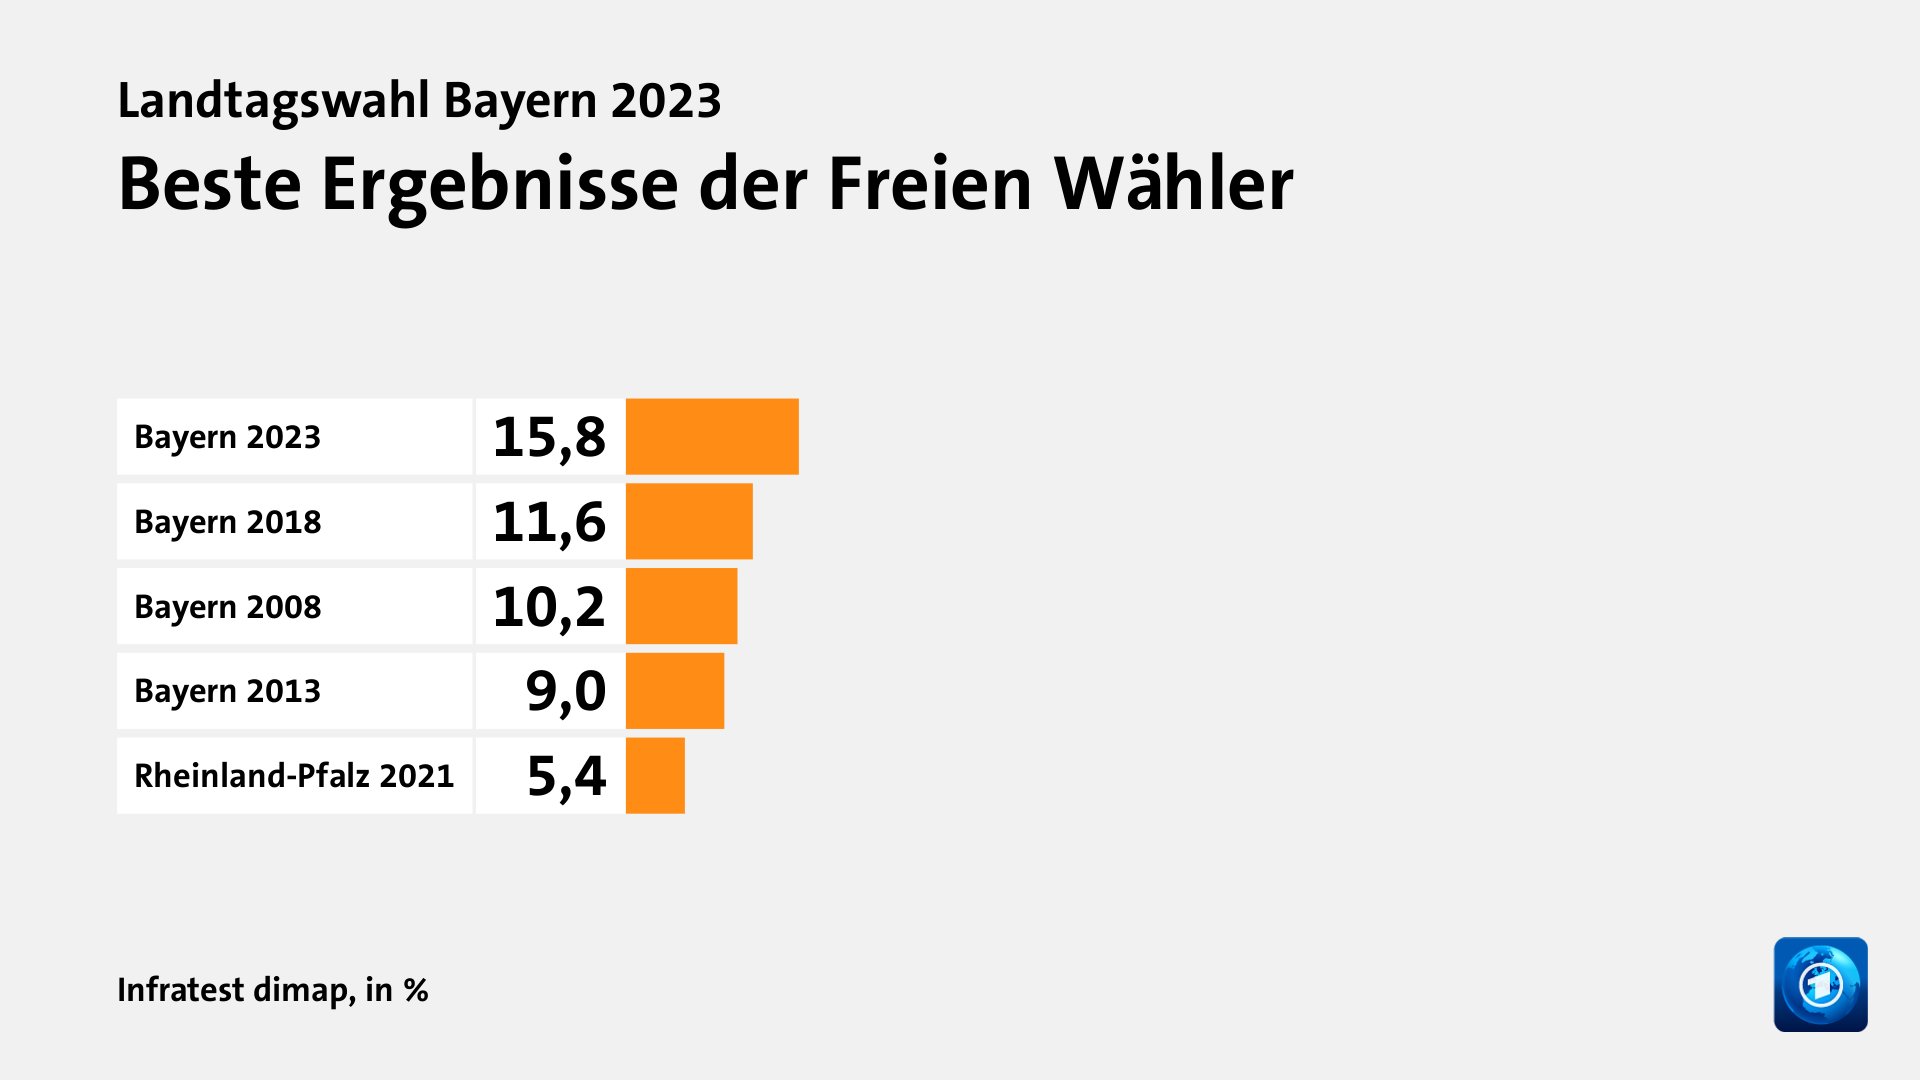 Beste Ergebnisse der Freien Wähler, in %: Bayern 2023 15, Bayern 2018 11, Bayern 2008 10, Bayern 2013 9, Rheinland-Pfalz 2021 5, Quelle: Infratest dimap